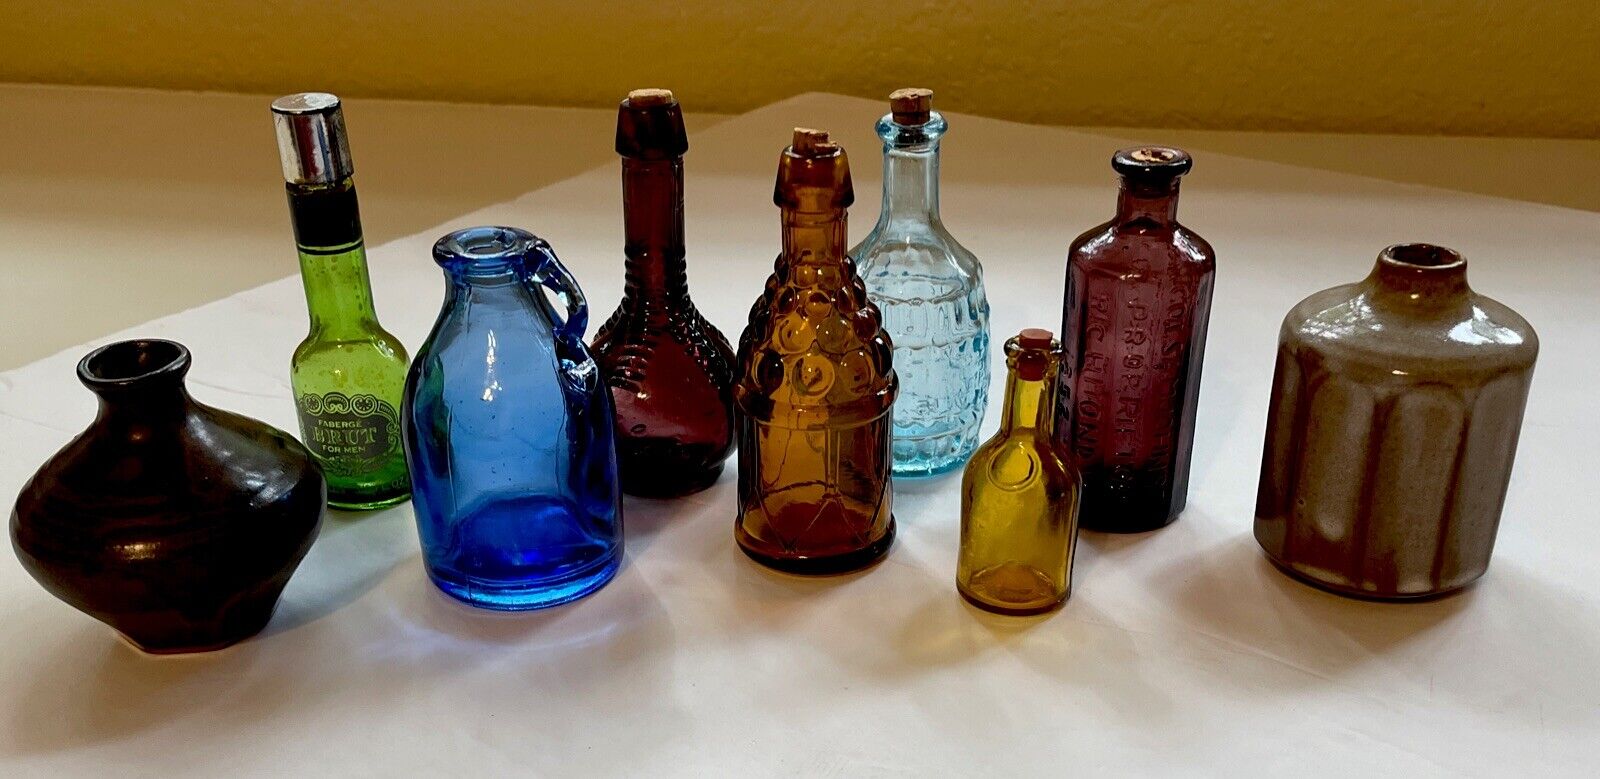 VTG Wheaton Miniature Glass Bottles Taiwan Bitters Lot Mini Pottery Brut Lotion